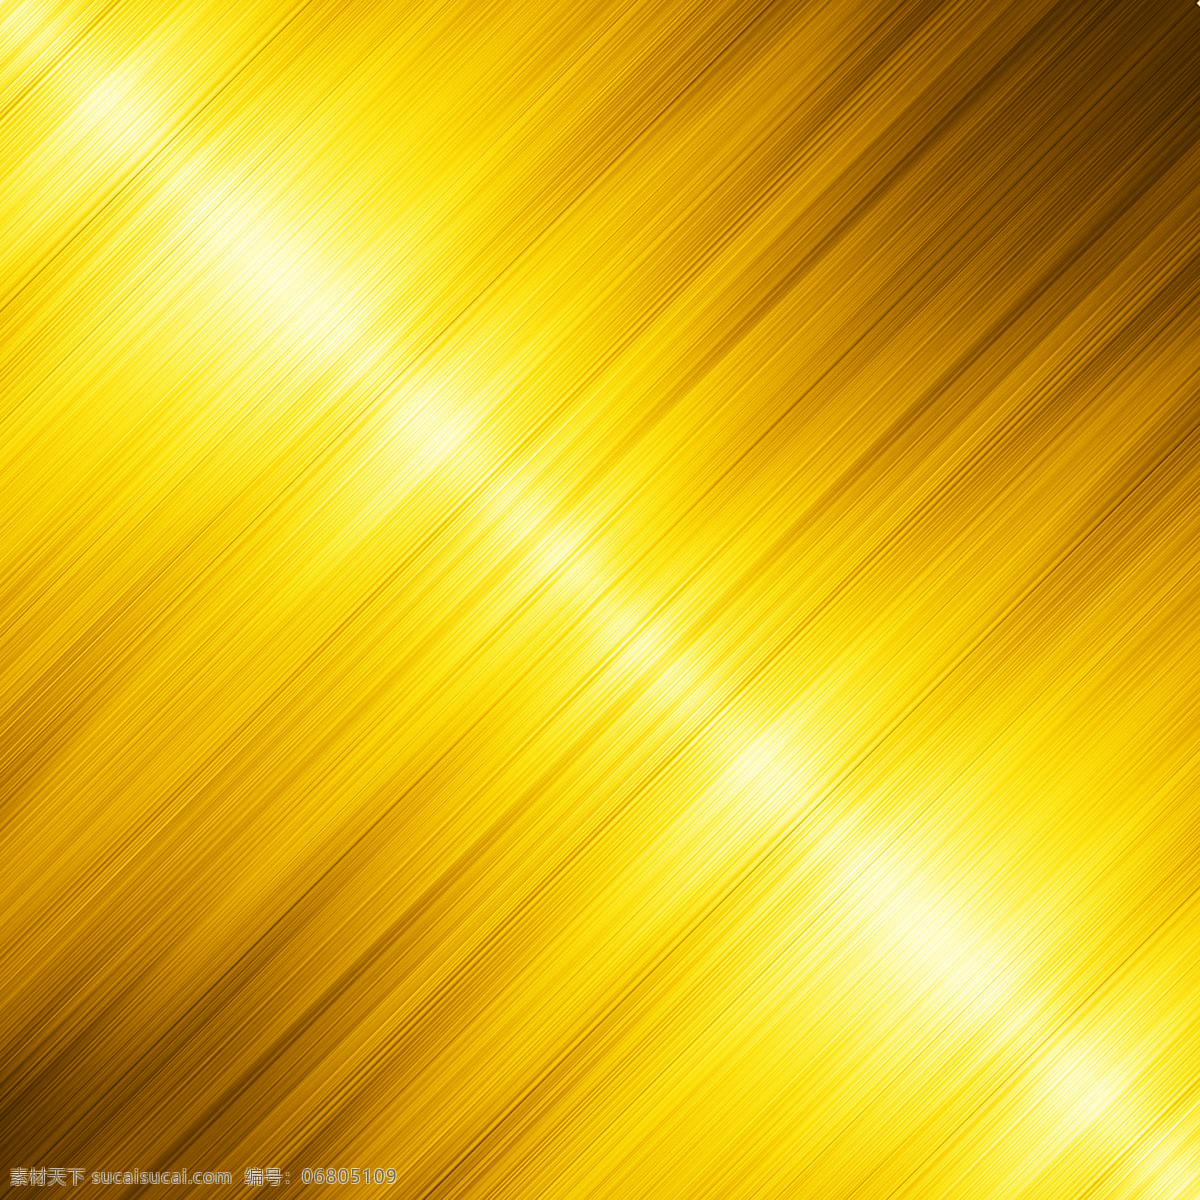 金属背景 金色背景 黄金效果 黄金拉丝背景 金属素材 金碧辉煌 金属效果 金色素材 黄金材质 金黄色背景 背景底纹 底纹边框